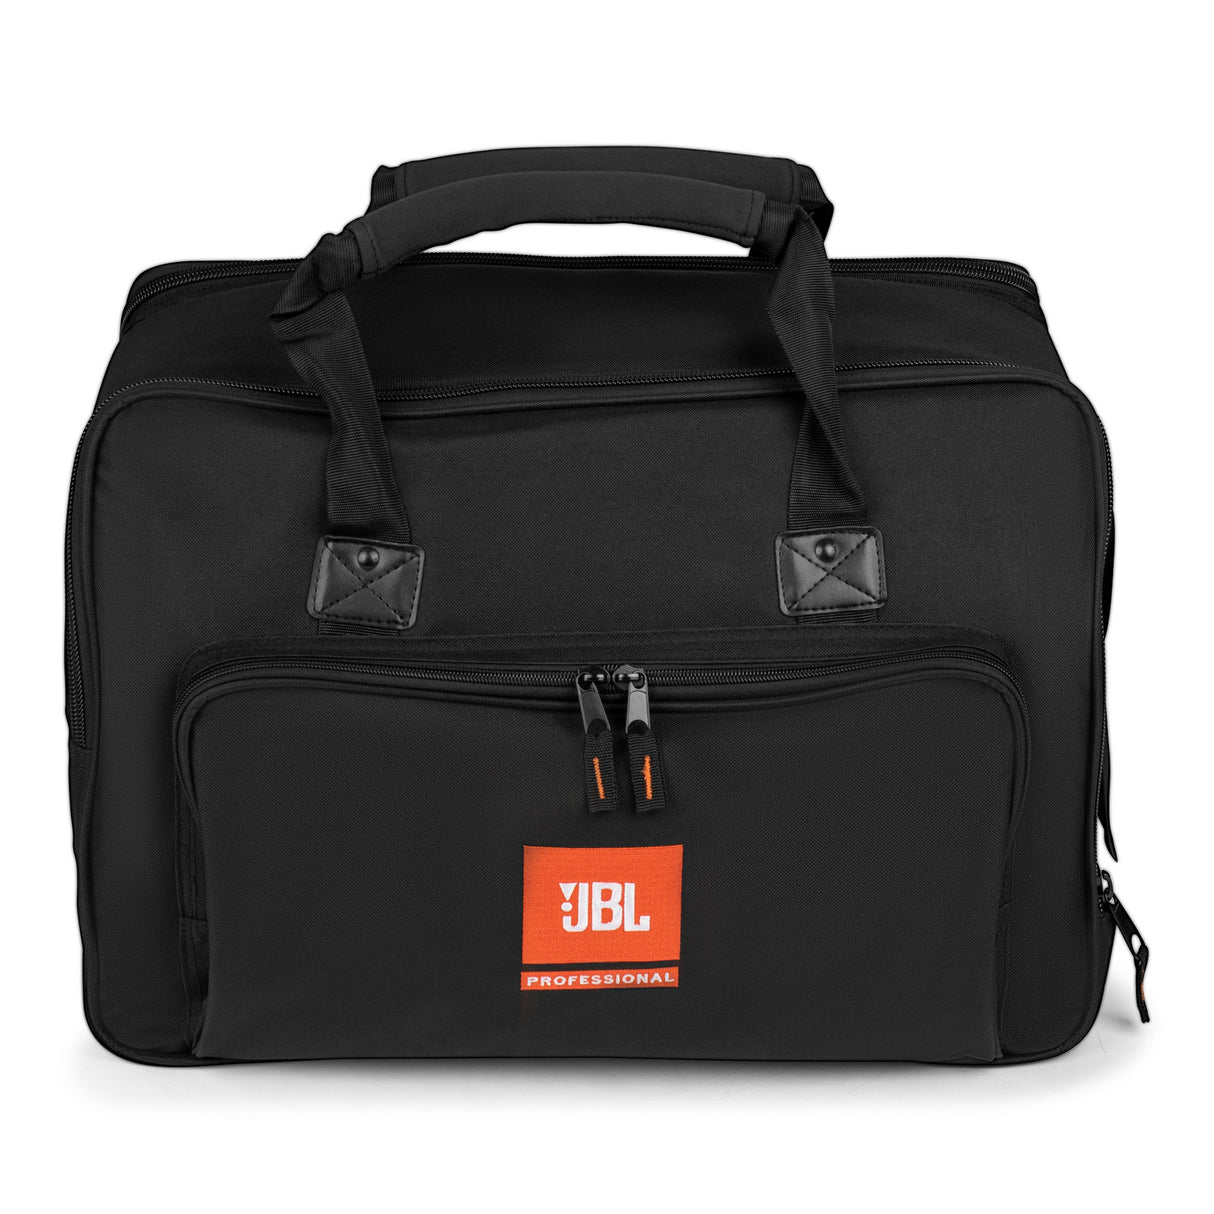 JBL PRX908-BAG Tote Bag for PRX908